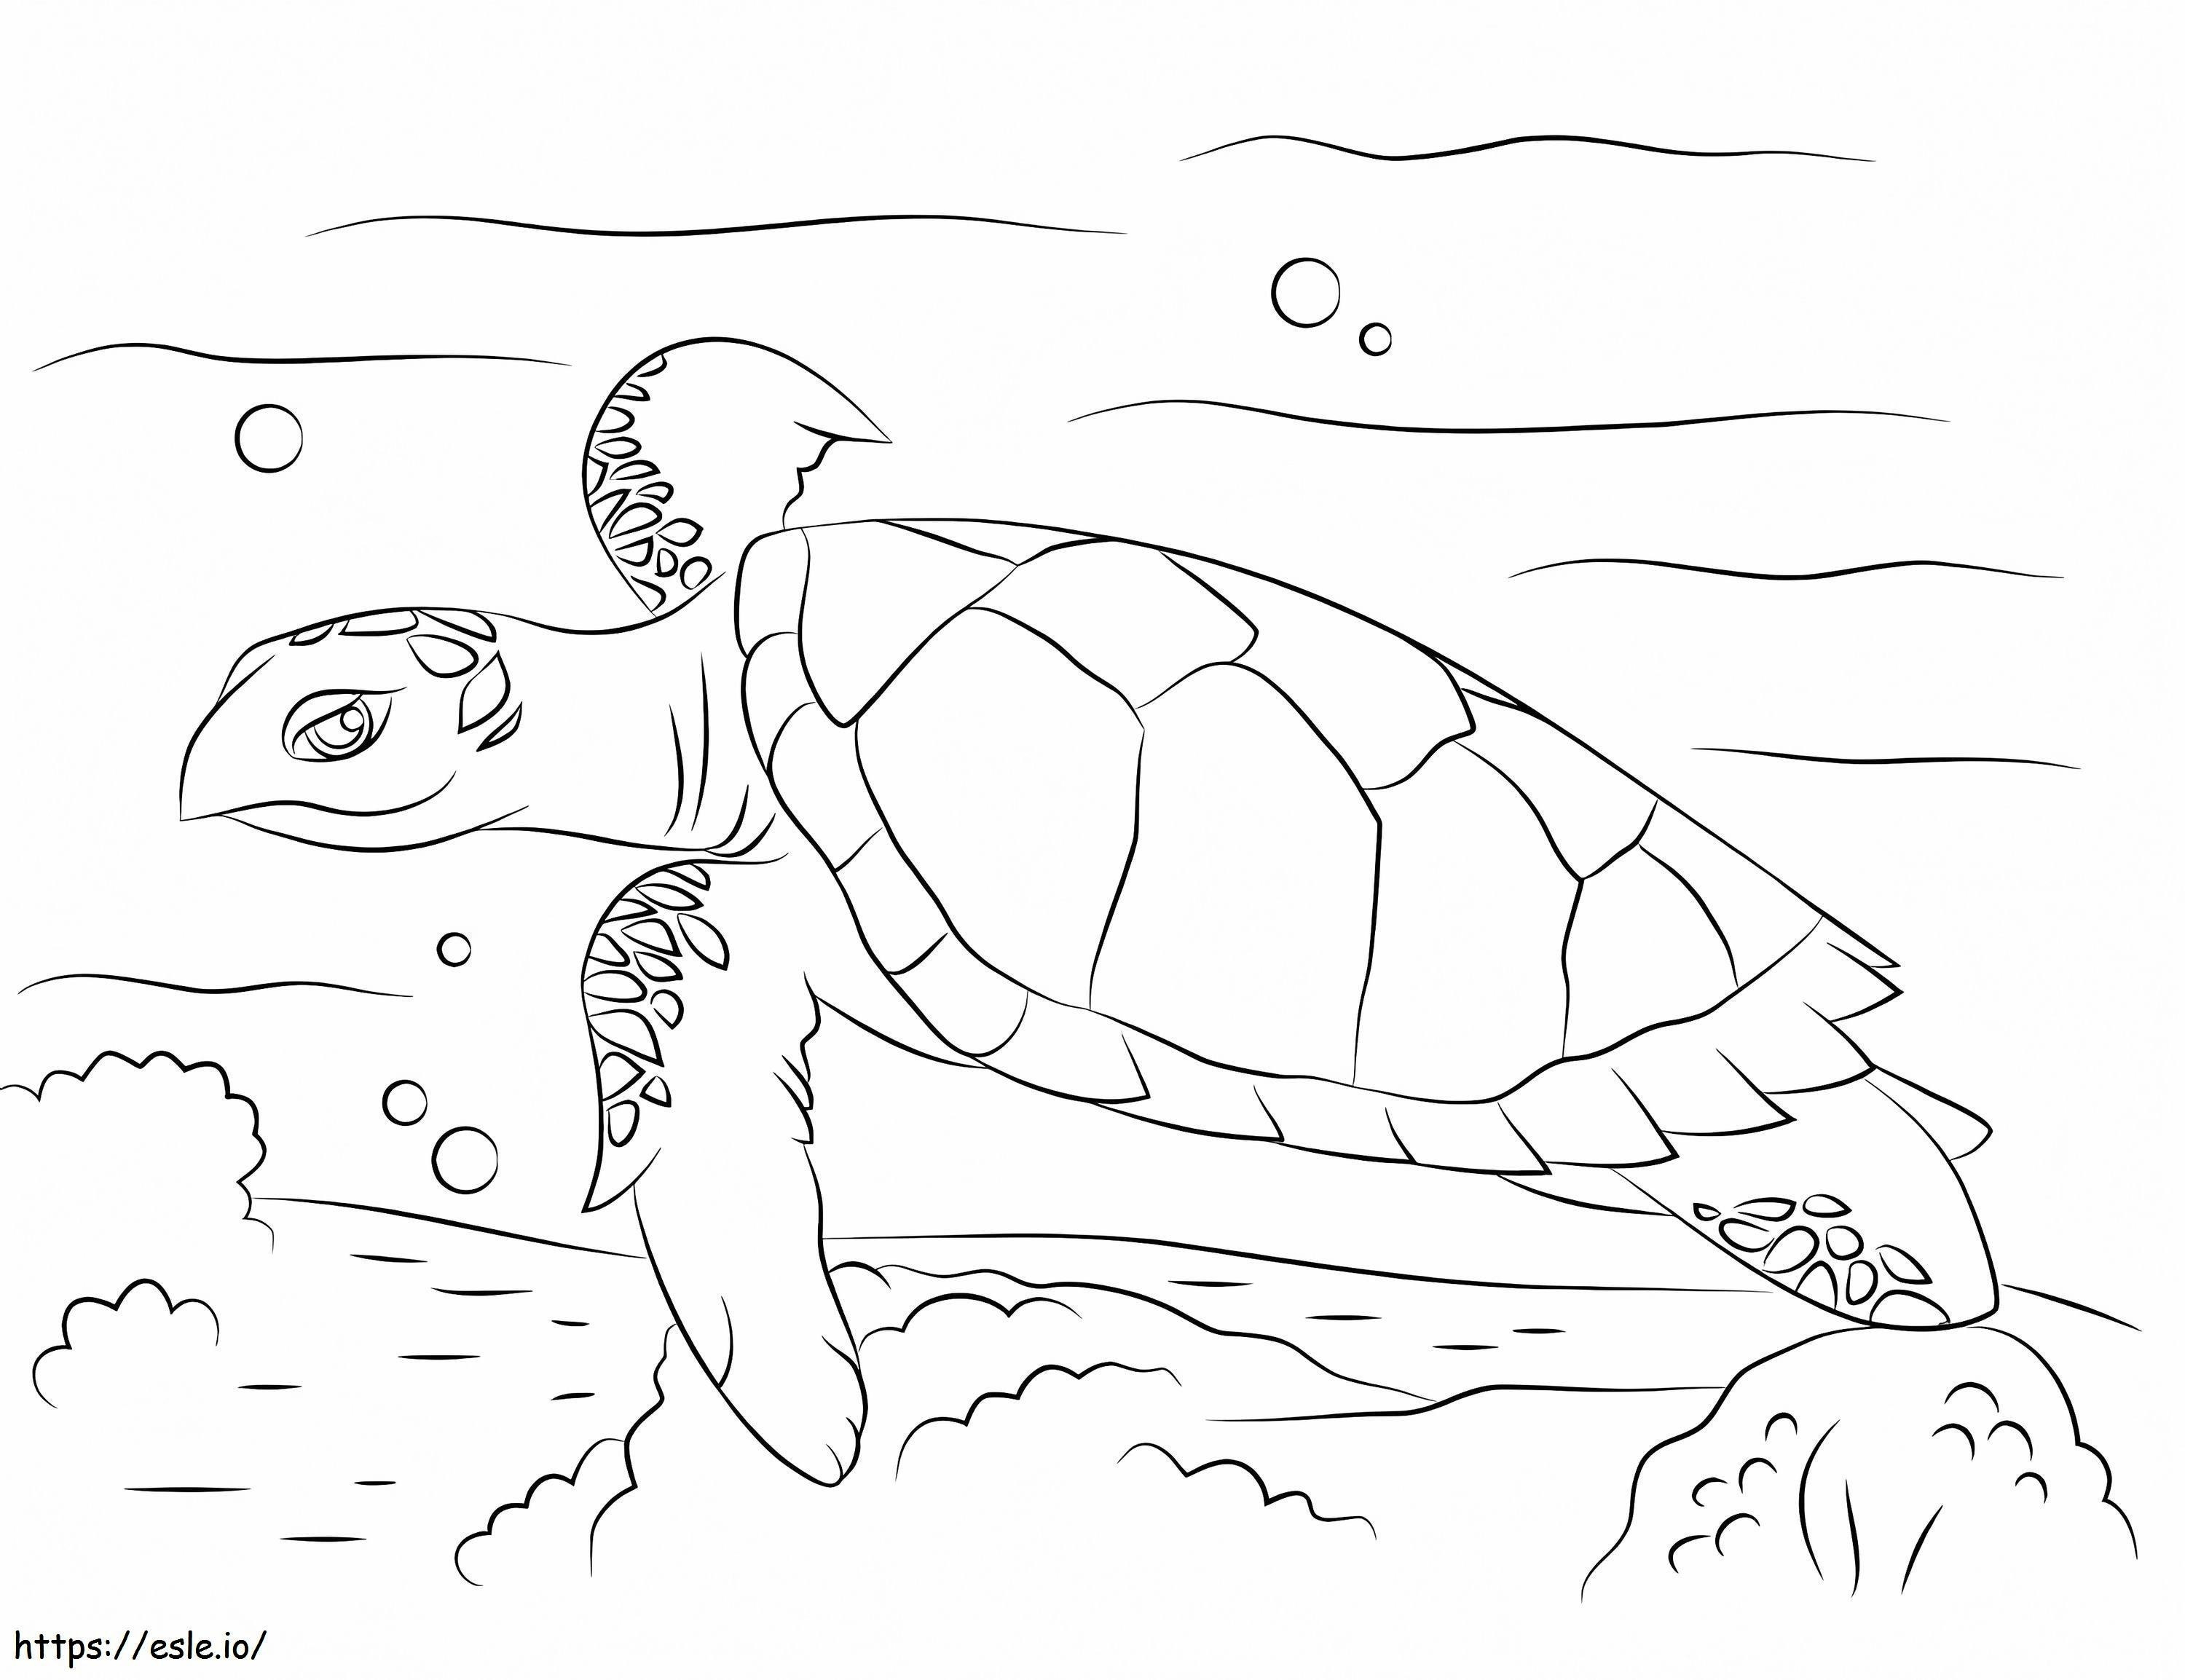 Simpatica tartaruga marina embricata da colorare